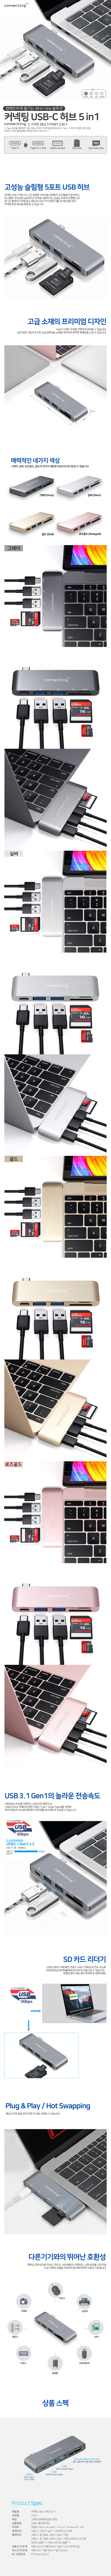 
고성능 슬림형 5포트 USB허브
커넥팅 USB-C허브 5in1은 슬림한 사이즈로 설계되어 공간활용이 용이하고, 미니멀한 사이즈로 노트북이나 넷북을 사용하시는 분들도 휴대가 간편합니다.
장기간 출장이나 여행 등도 별도의 USB기기의 충전기를 준비할 필요 없이 커넥팅 허브 하나로 해결할 수 있습니다.
고급 소재의 프리미엄 디자인
45g의 가벼운 무게로 간편하게 휴대할 수 있습니다.
또한 방열 기능이 우수한 고급 알루미늄 소재로 제작되어 완벽한 일체감을 느낄 수 있습니다.
매력적인 네가지 색상
그레이, 실버, 로즈골드, 골드의 네가지 세련된 색상으로 만나보실 수 있습니다.
USB 3.1 Gen1의 놀라운 전송속도
480Mbps속도를 지원하는 USB2.0은 물론이고, USB2.0보다 01배이상 빠른 USB3.1 Gen1 Super Speed를 지원해 최대 5Gbp의 속도로 대용량의 데이터를 보다 빠르게 전송할 수 있습니다.
SD카드 리더기
USB2.0보다 01배이상 빠른 USB3.1 Gen1 5Gbps의 전송 속도로 사진/동영상/데이터를 빠르게 복사 및 이동시킬 수 있습니다. 어댑터 없이 바로 꽂아 편리하게 사용하세요.
Plug&play / Hot Swapping
별도의 설치 필요 없이 연결 후 바로 사용할 수 있습니다.
다른기기와의 뛰어난 호환성
뛰어난 호환성으로 키보드, 마우스 USB메모리, 외장하드, USB포터블 스피커 등 USB기반의 제품을 연결하여 동시에 편리한 사용이 가능합니다.
